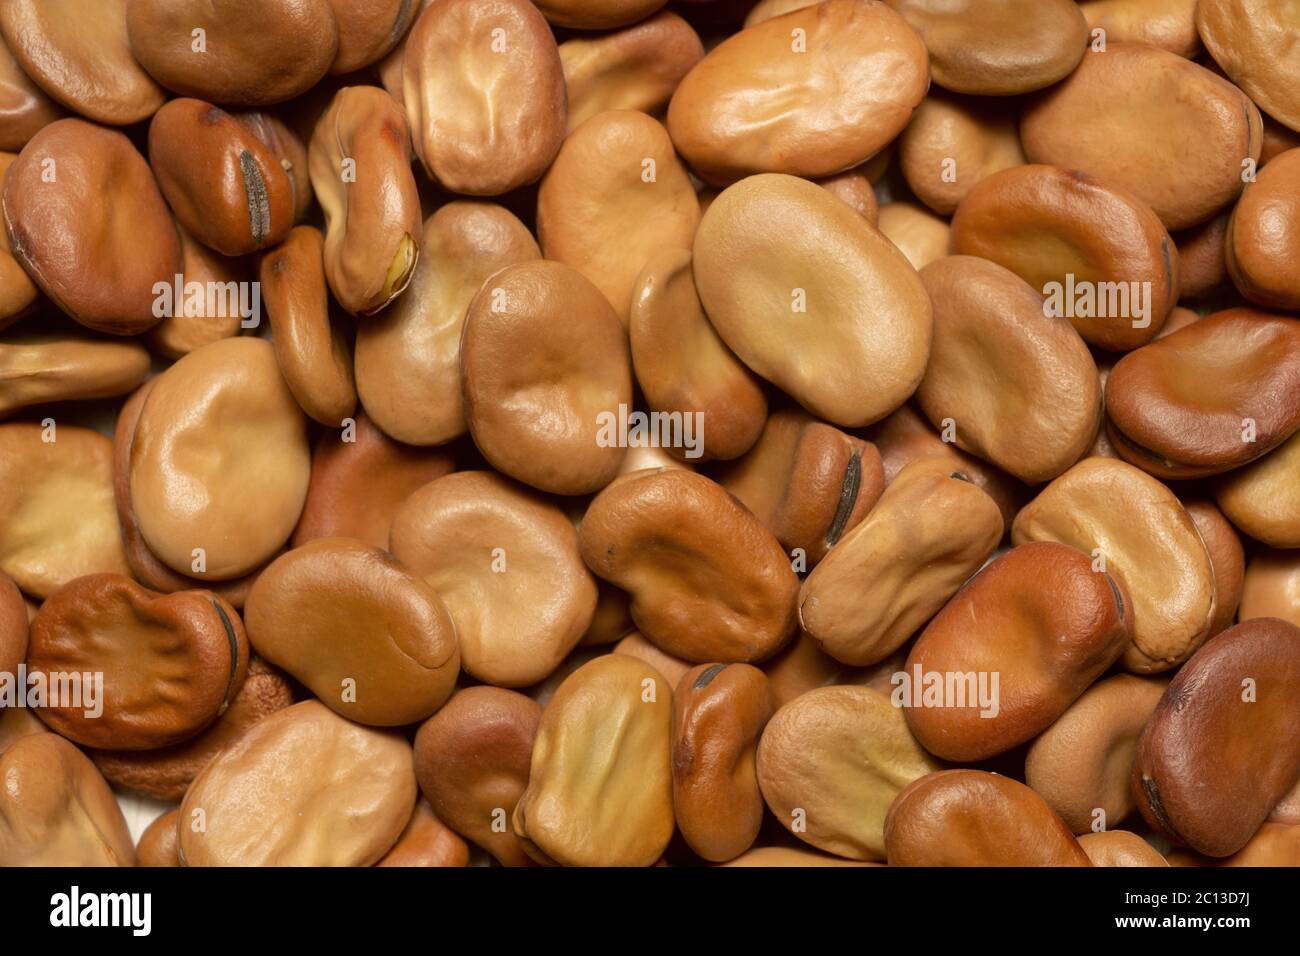 Graines de haricots larges, variété Aqualfce, photographiée en studio. Banque D'Images